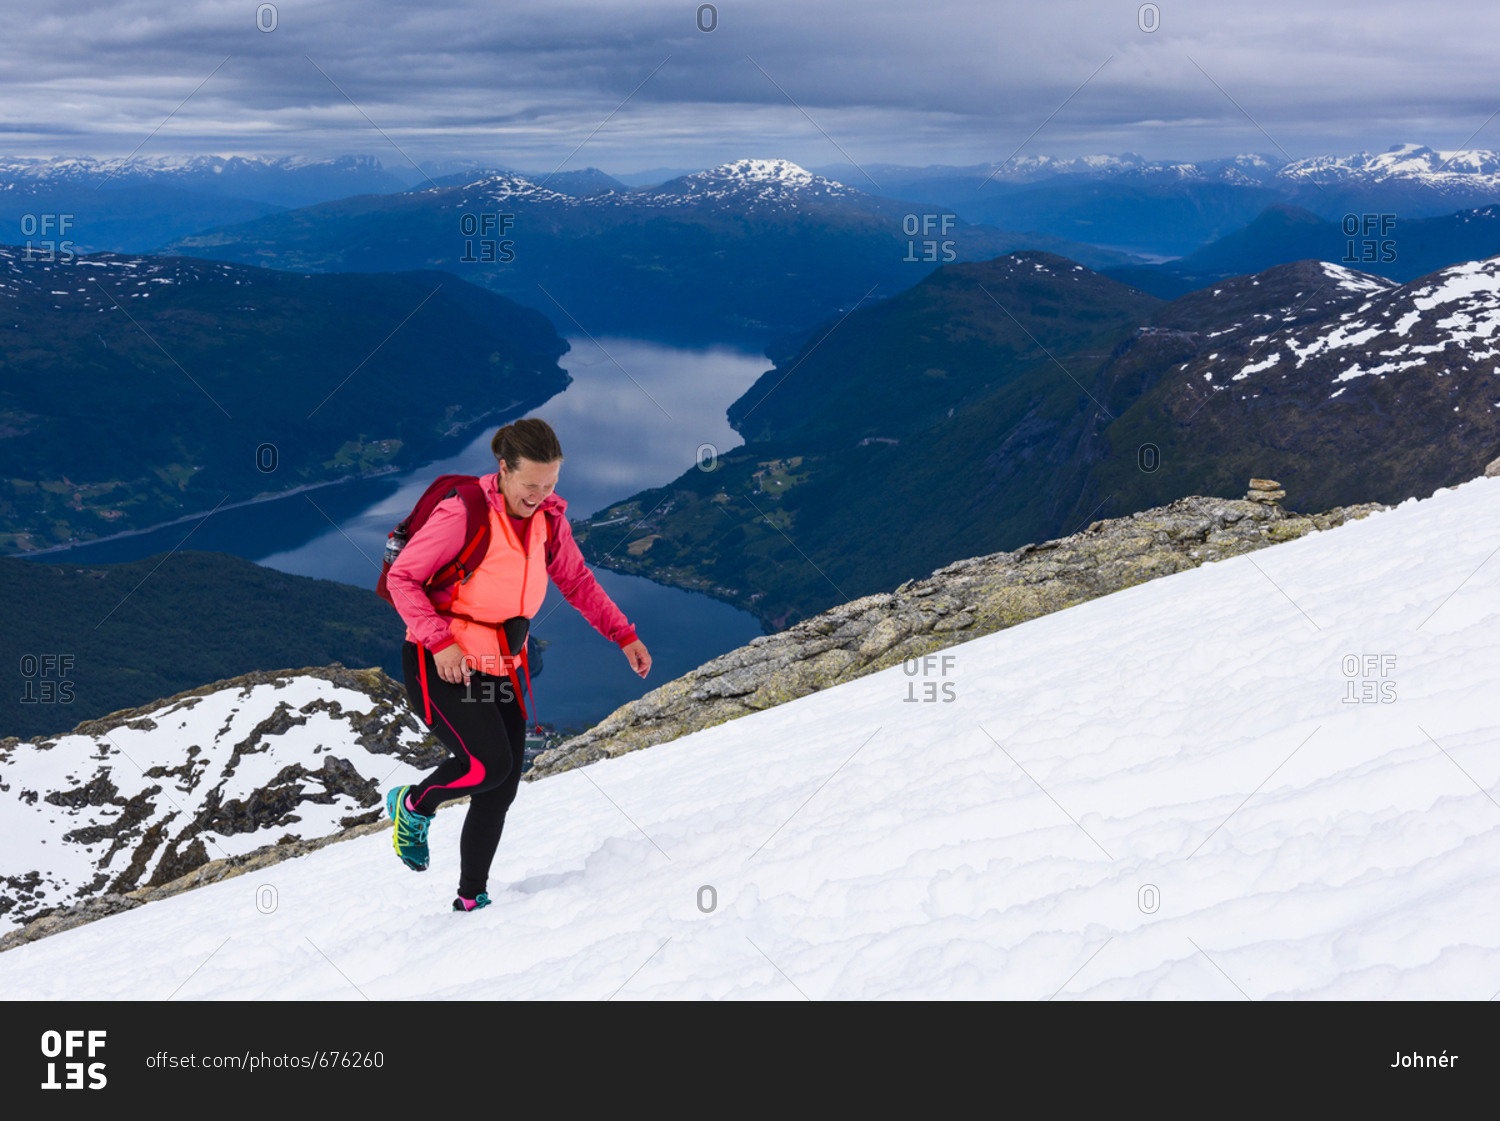 Woman hiking in snowy landscape